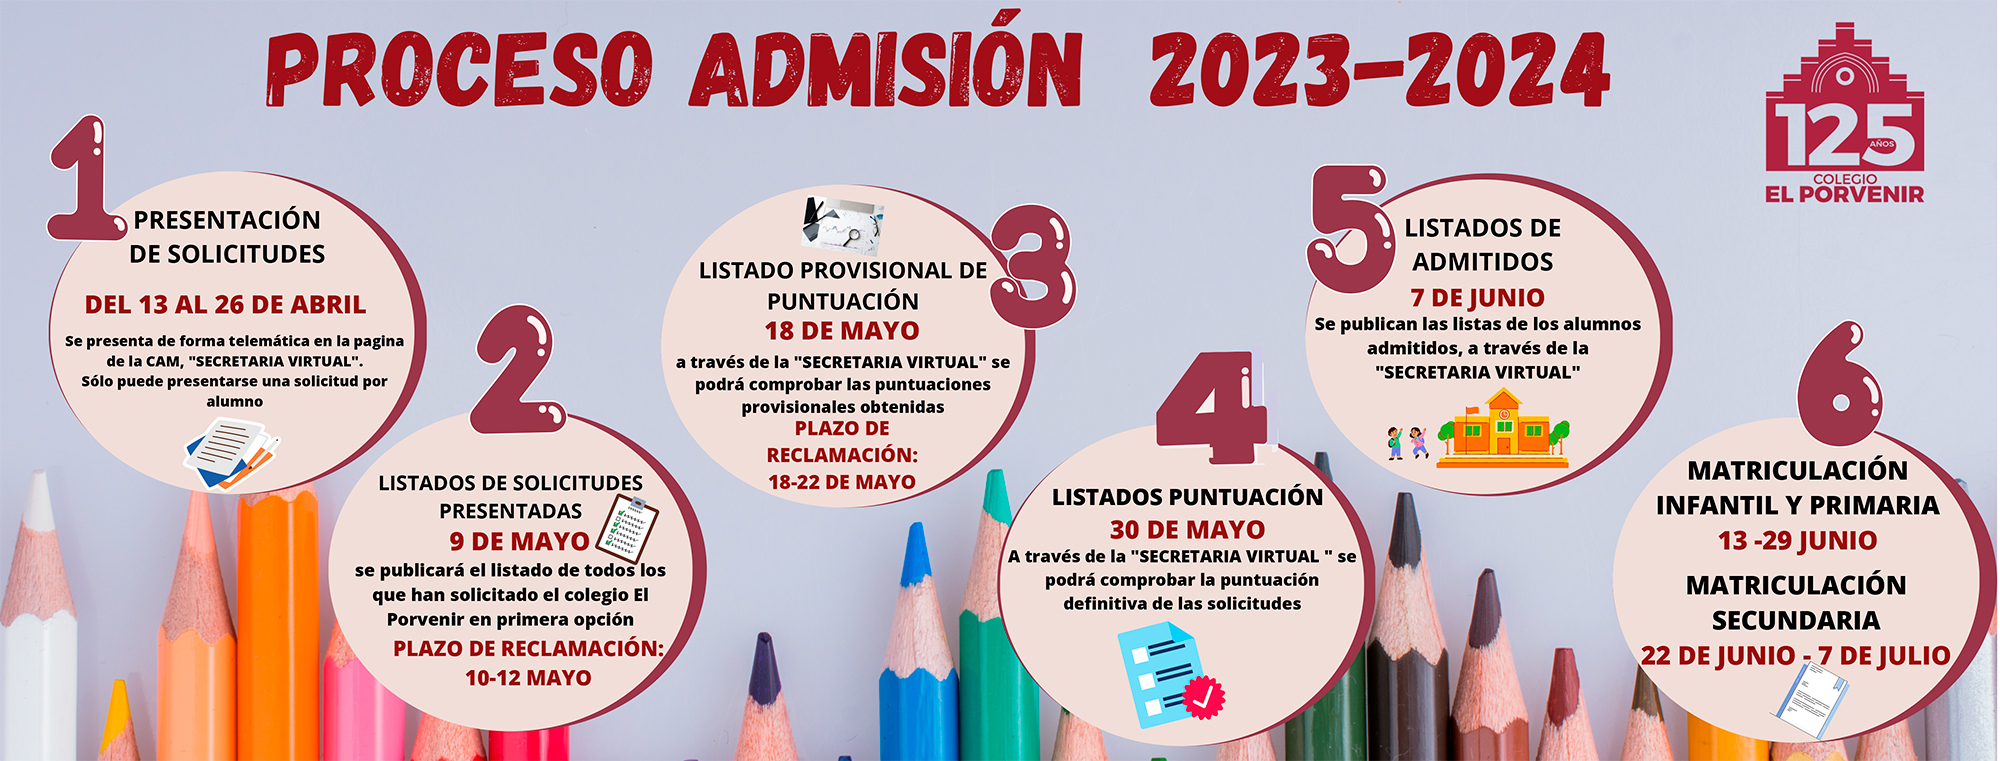 Proceso de Admisión 2023-2024 colegio El Porvenir